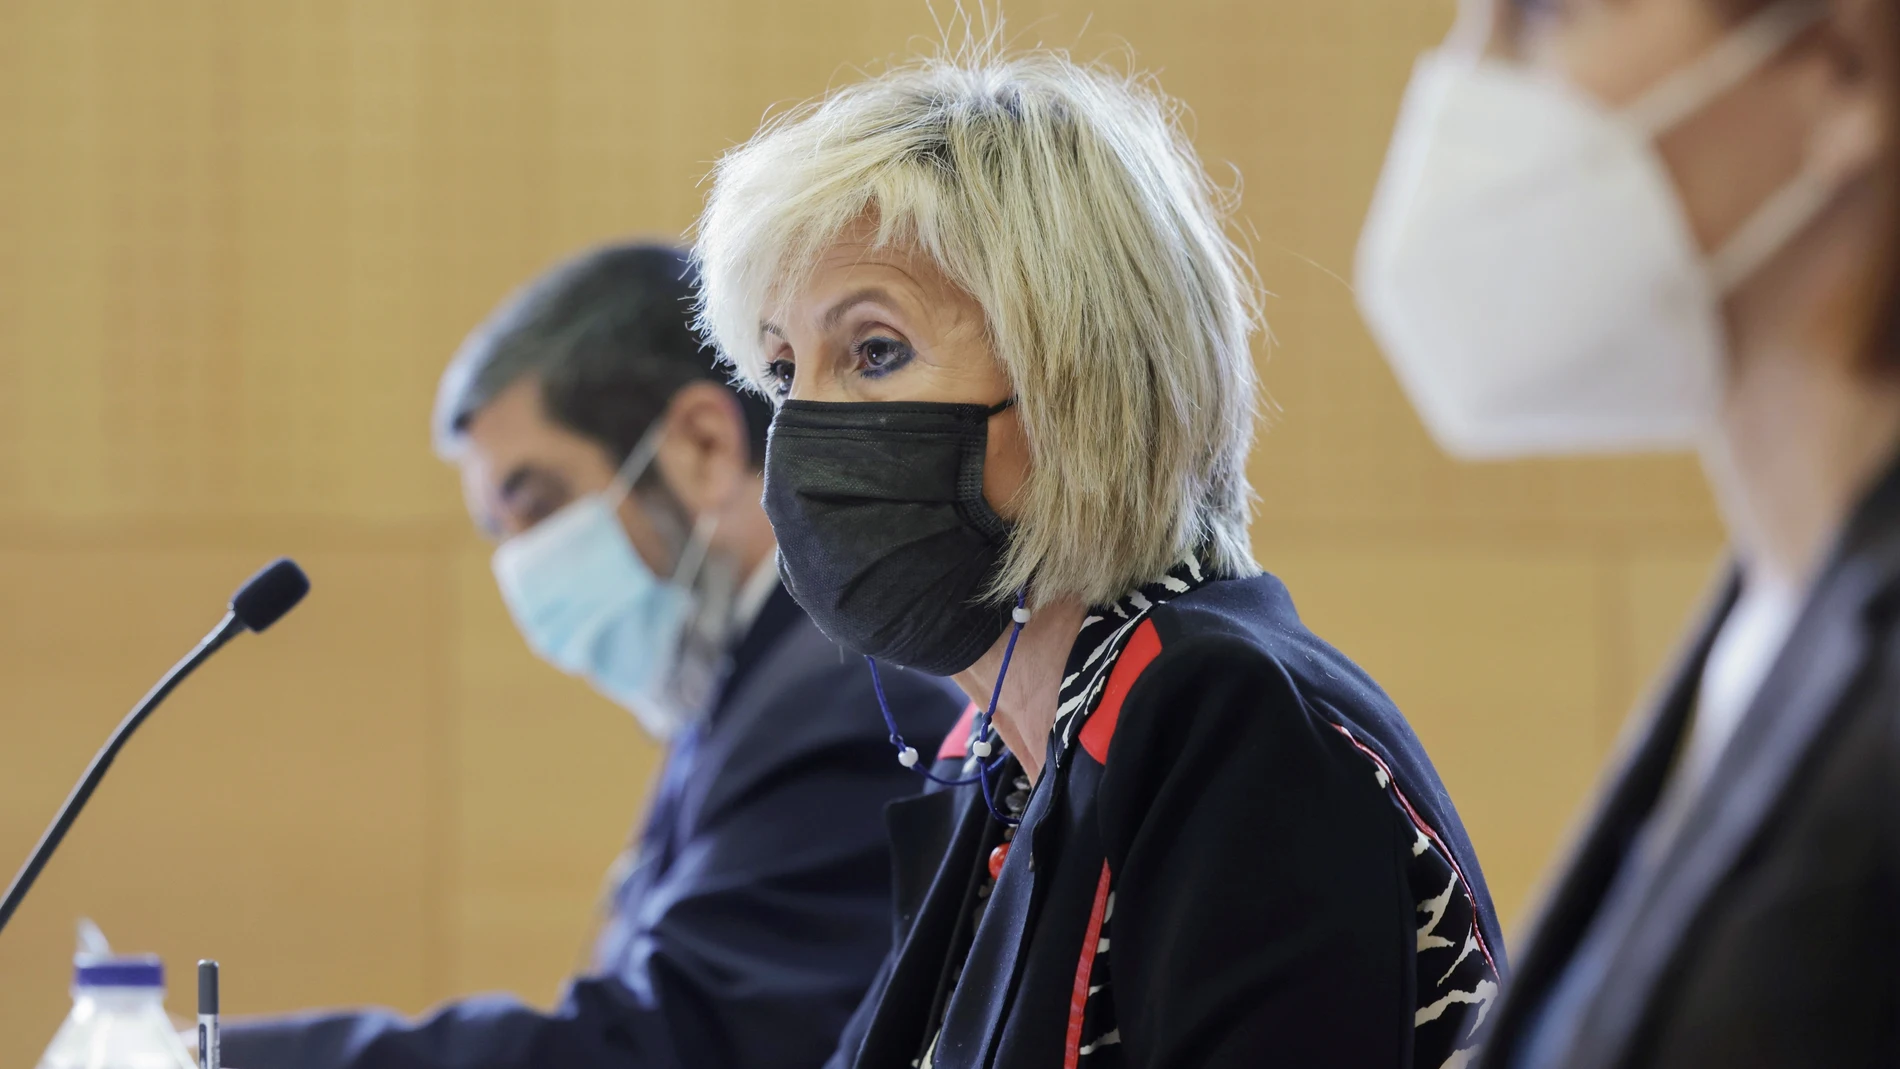 La consejera de Sanidad de Castilla y León, Verónica Casado, da una rueda de prensa para informar sobre los datos de agresiones al personal sanitario, este miércoles en Valladolid.